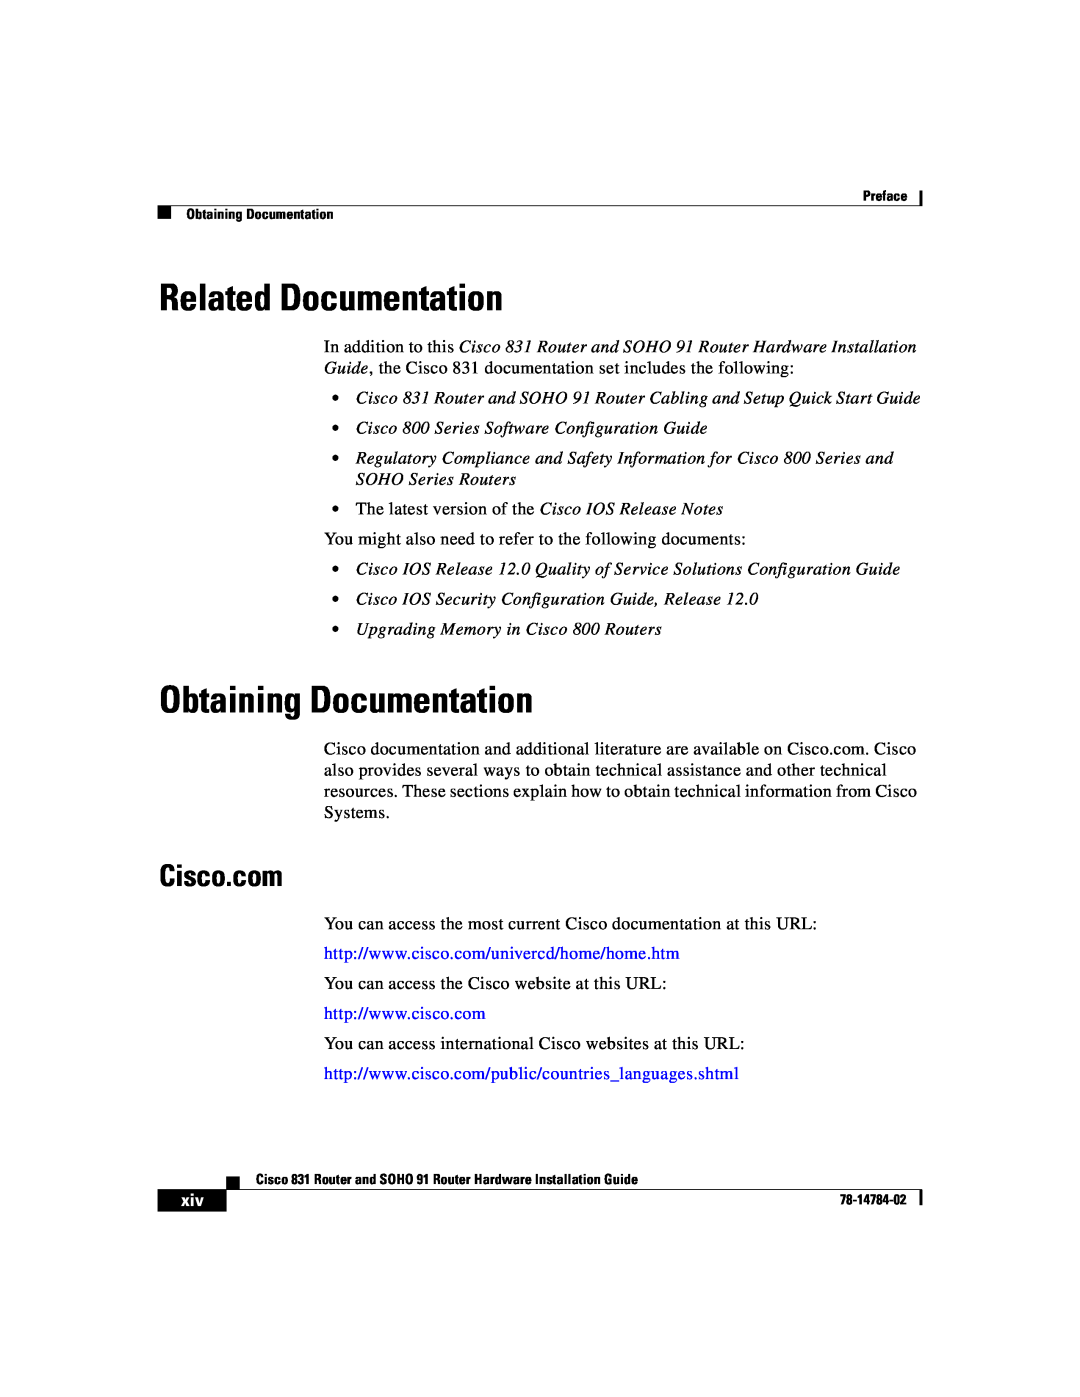 Cisco Systems 78-14784-02 manual Related Documentation, Obtaining Documentation, Cisco.com 